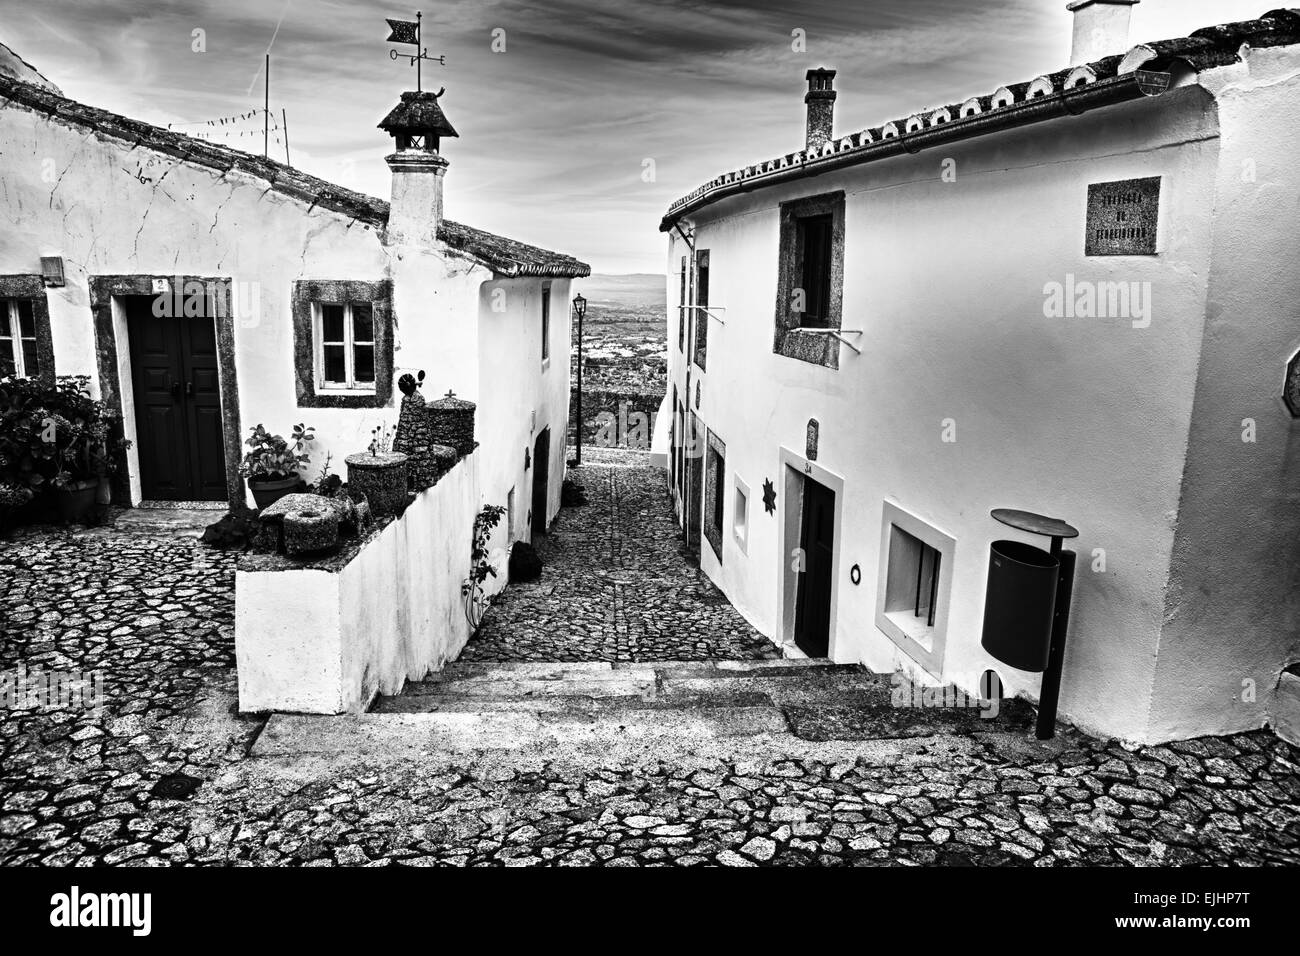 Emblematic whitewashed architecture in Marvao, Alentejo, Portalegre, Portugal Stock Photo